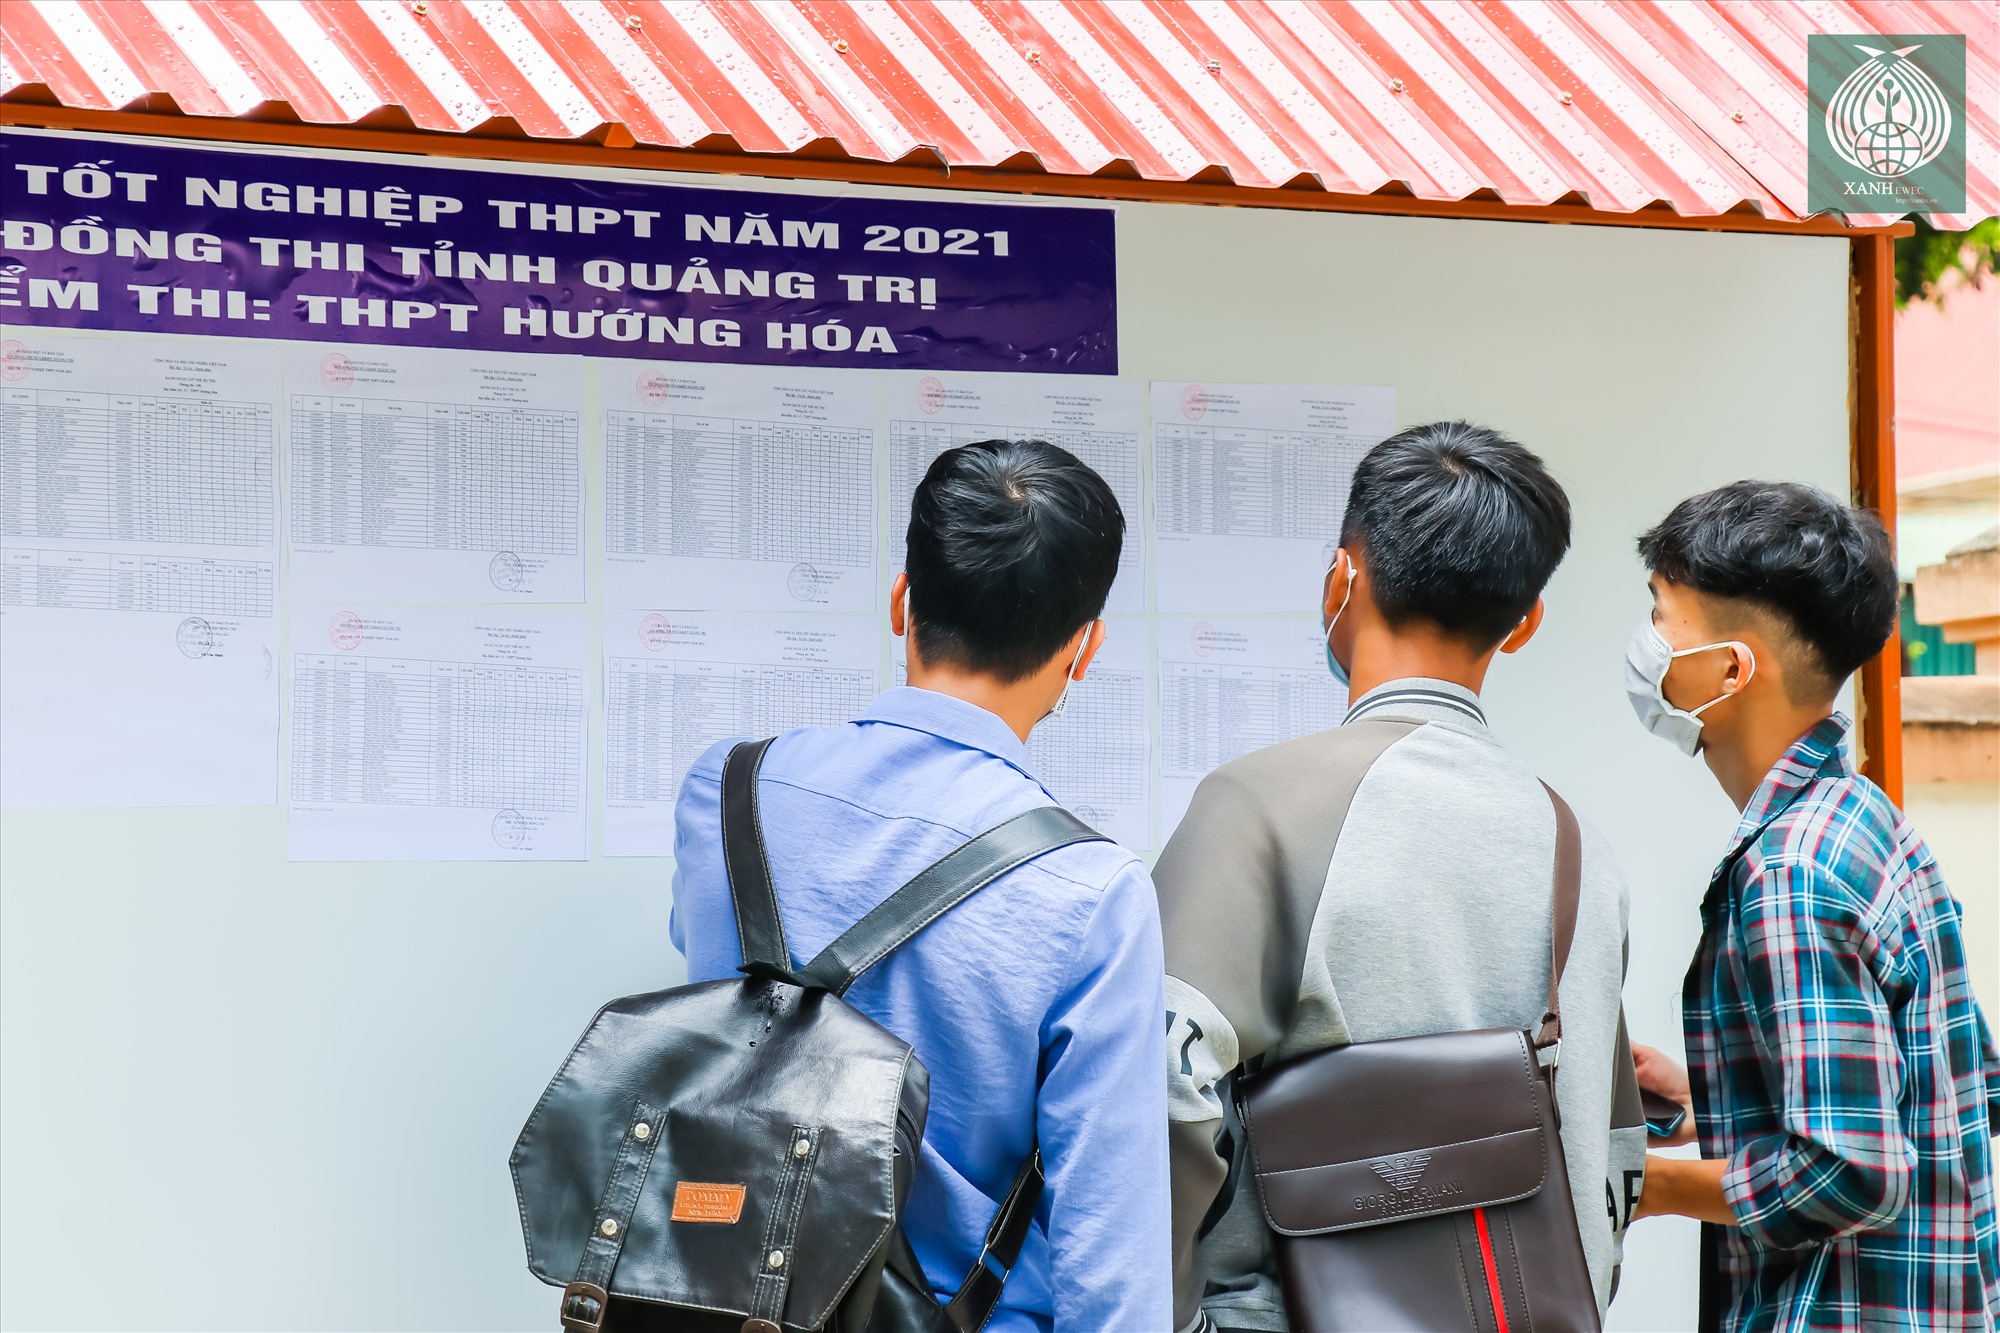 Điểm thi Trường THPT Hướng Hóa tại tại trấn Khe Sanh là điểm có số lượng thí sinh dự thi lớn nhất toàn Huyện.